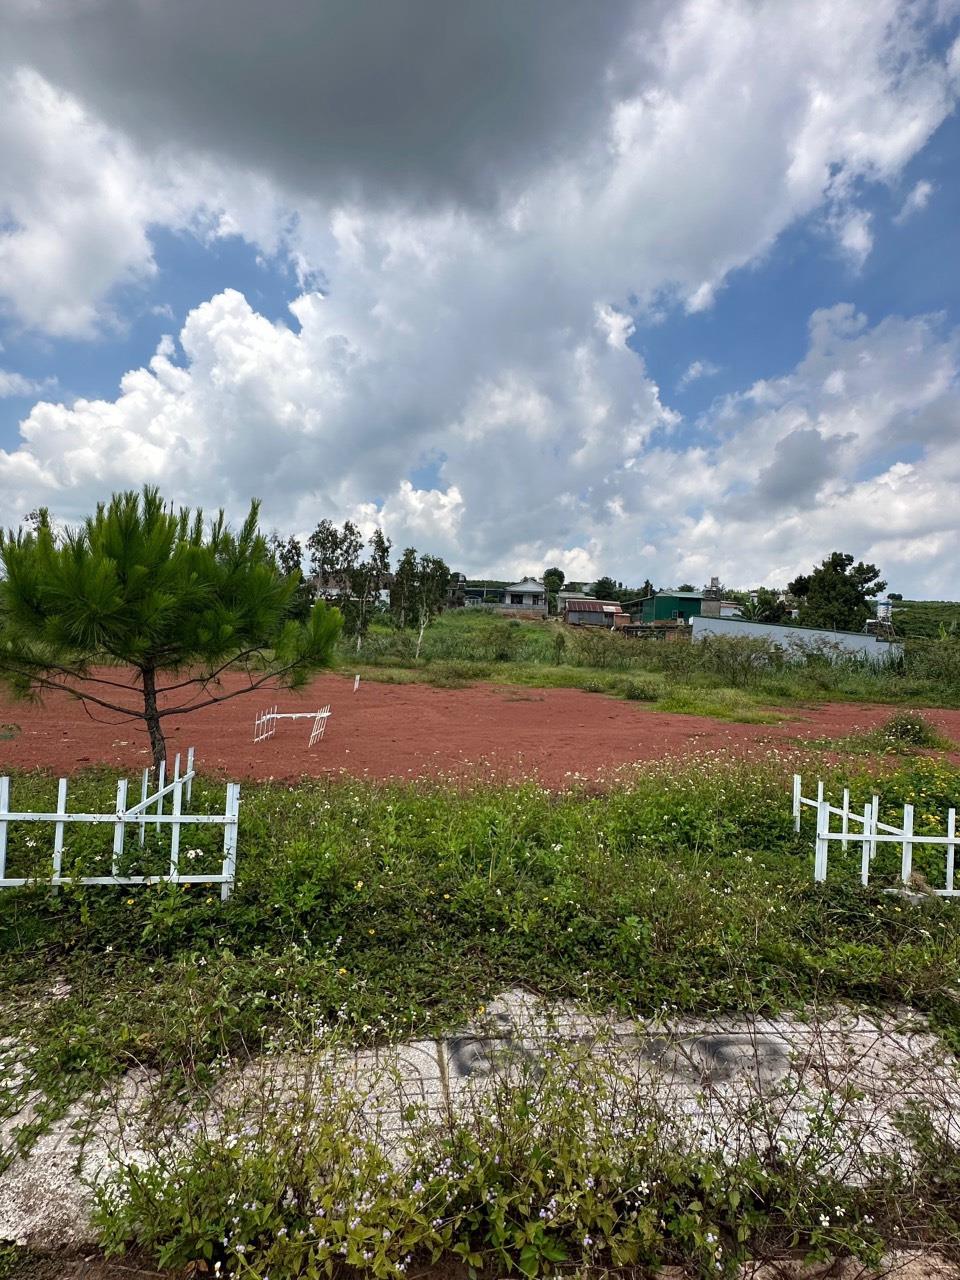 ĐẤT ĐẸP - GIÁ TỐT - Chính Chủ Cần Bán gấp Lô Đất đẹp tại xã Lộc Quảng, huyện Bảo Lâm, tỉnh Lâm Đồng - Ảnh 1